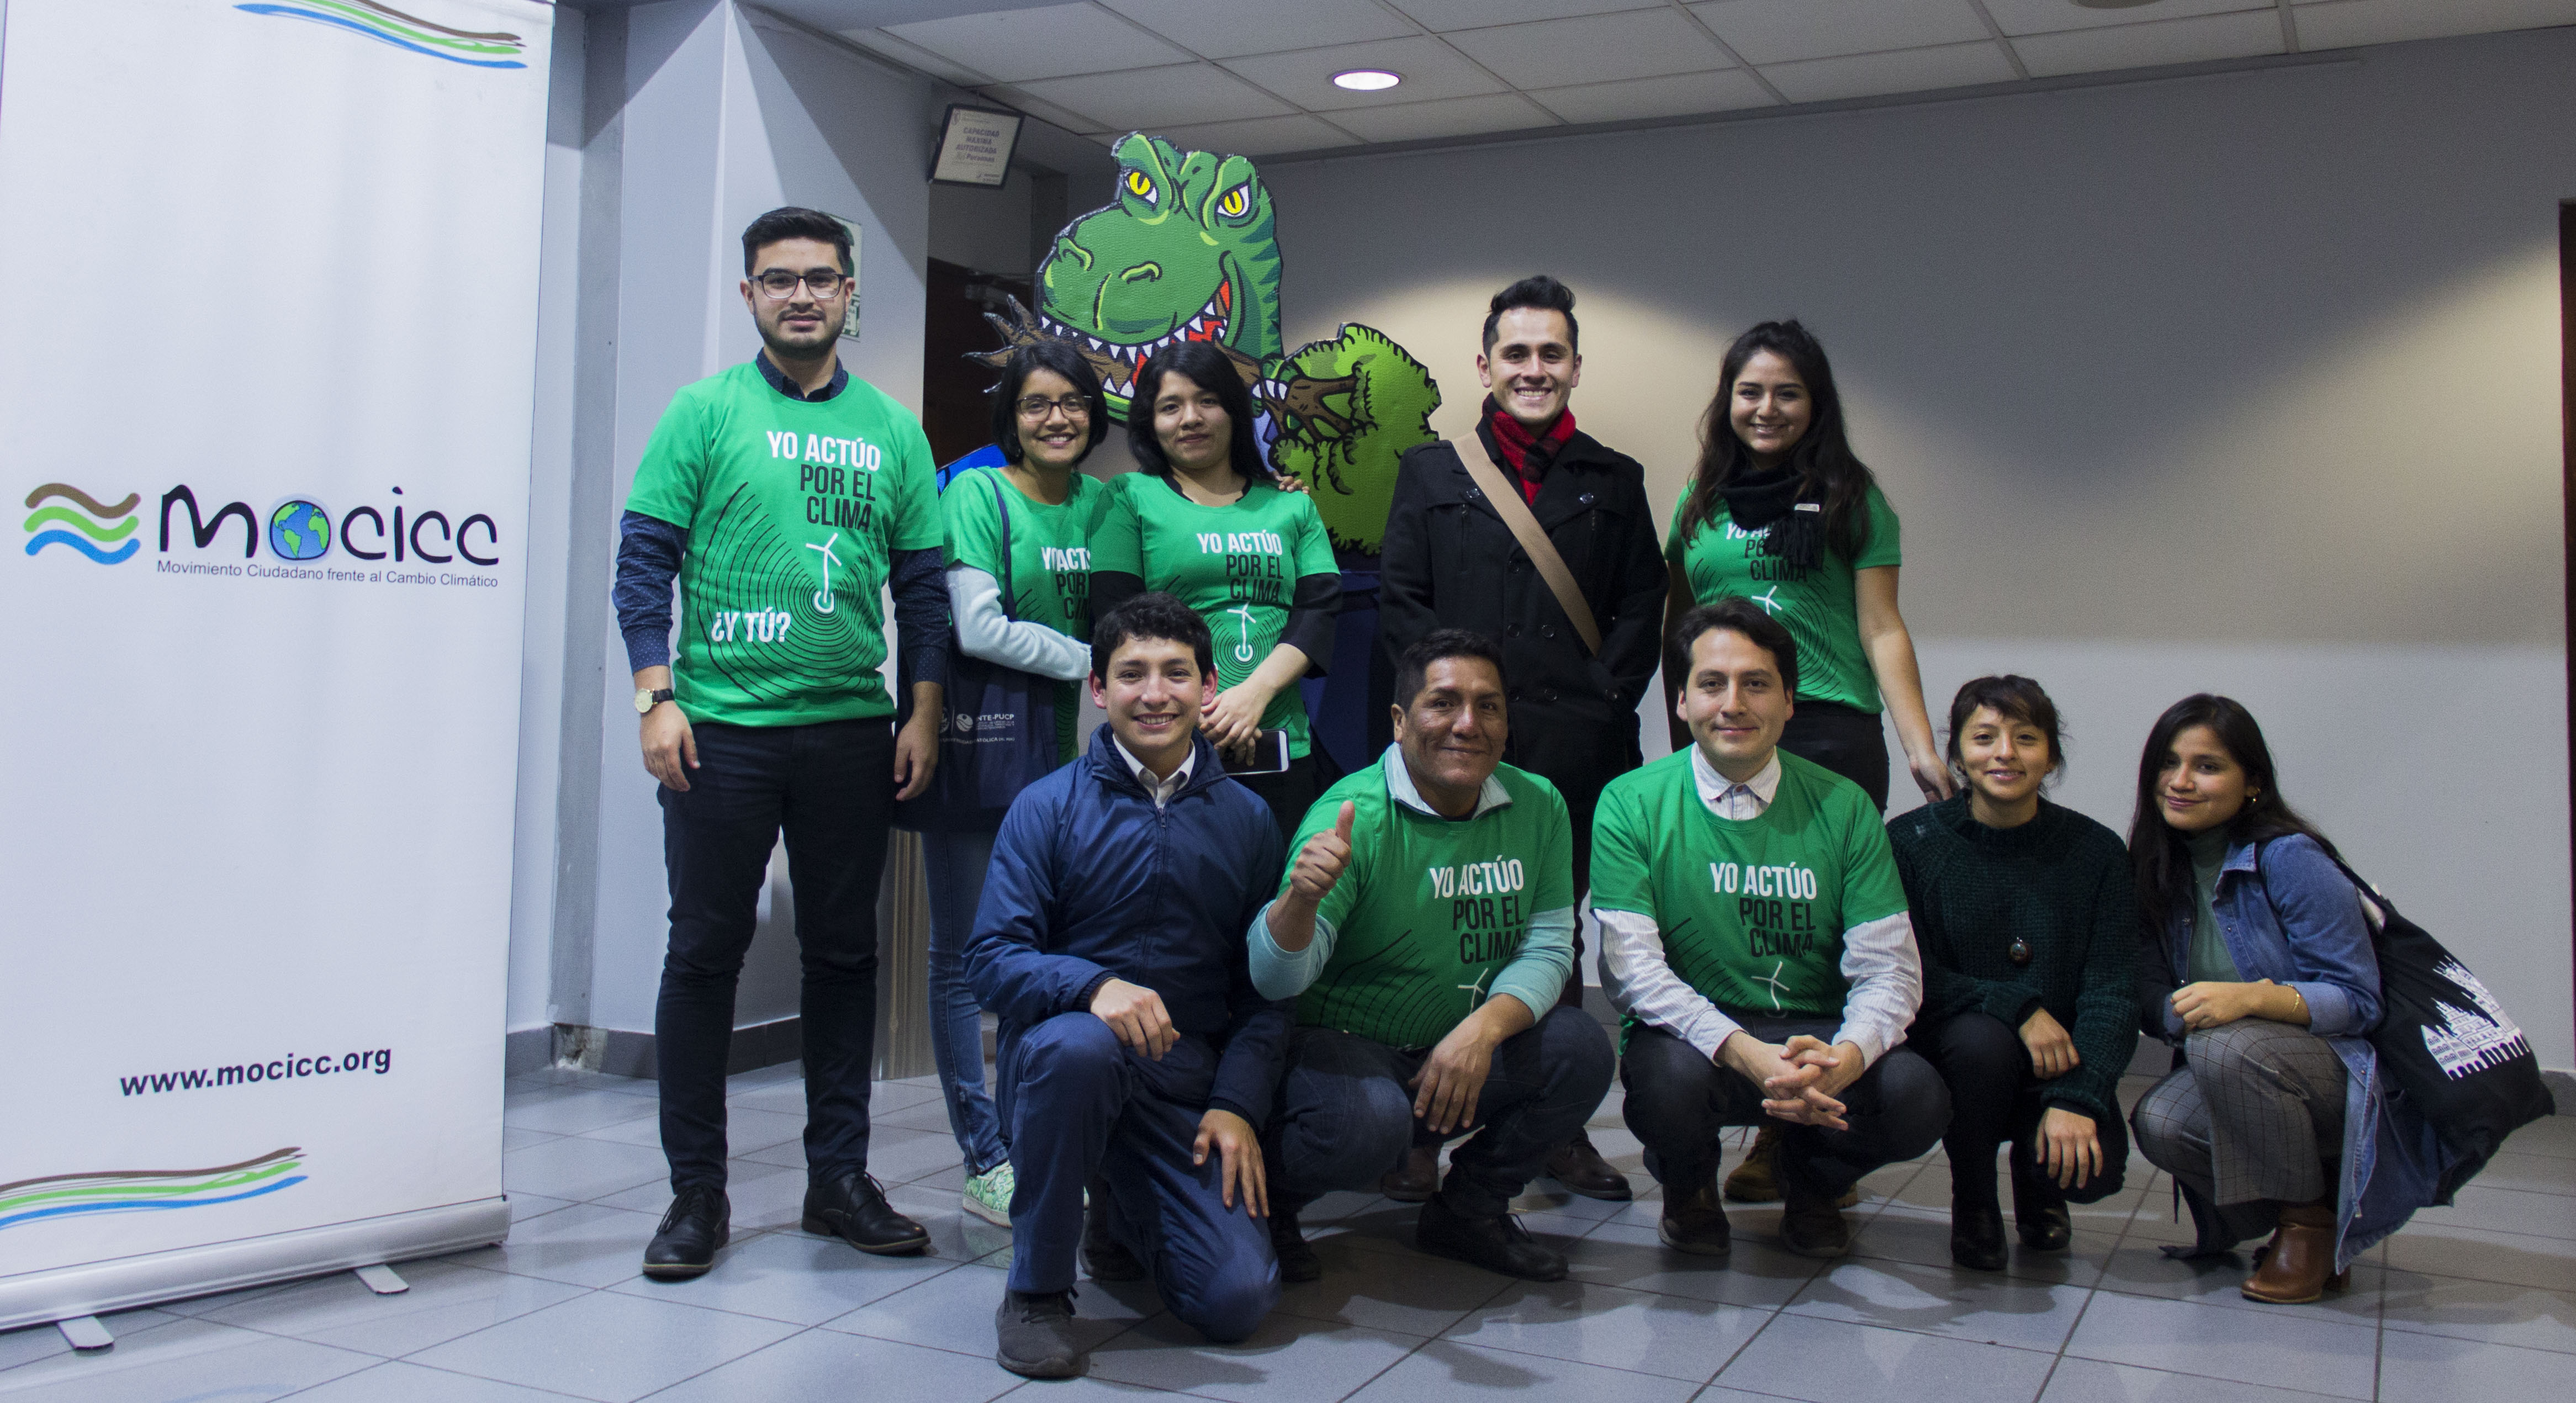 Petroperú, Grupo Melka y el Congreso se llevaron los premios “Hacia la extinción” 2019